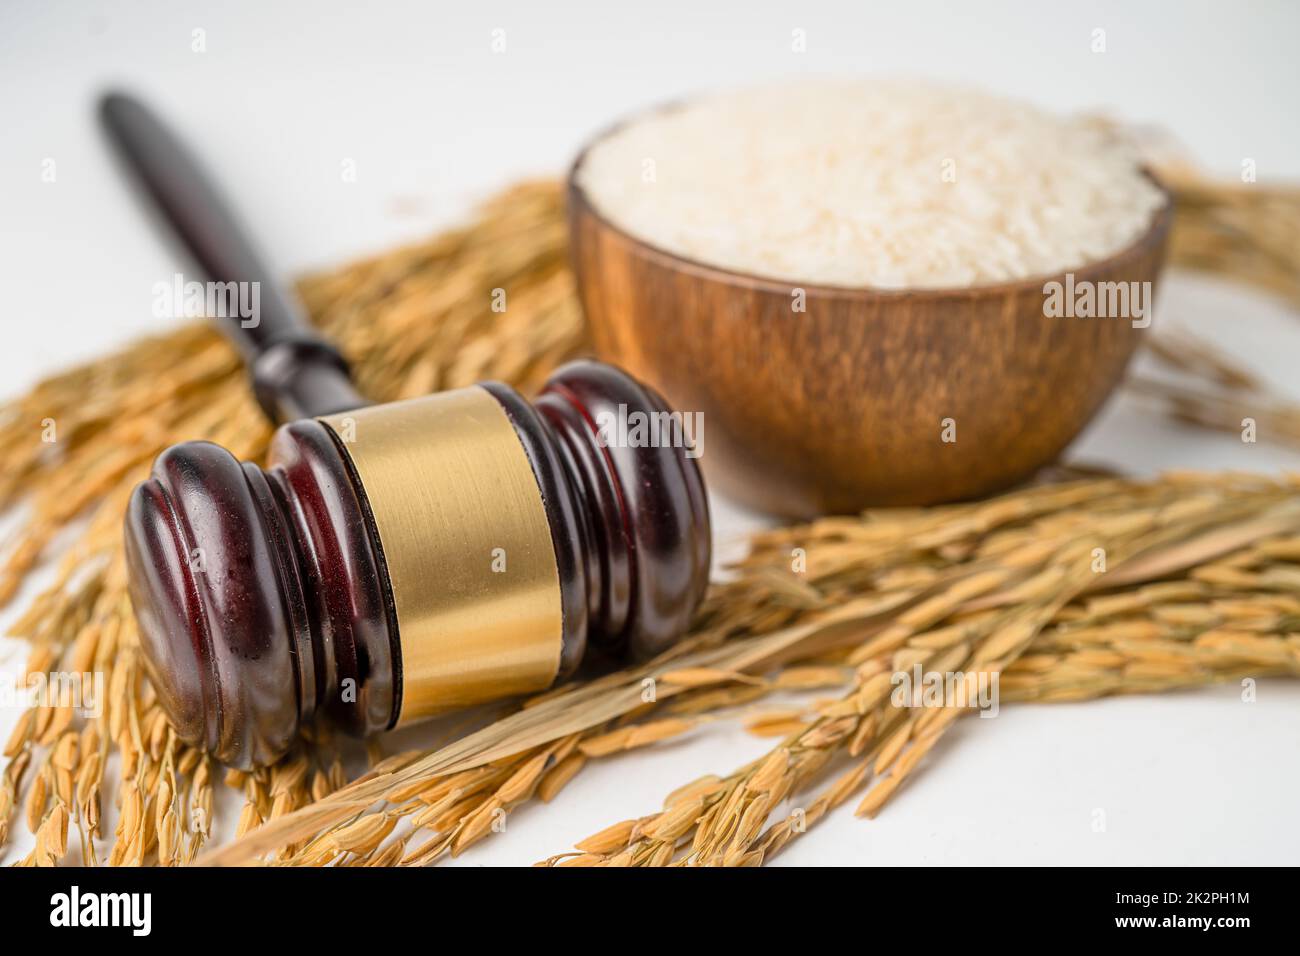 Juge marteau de gavel avec du riz bon grain de ferme agricole. Droit et justice concept de tribunal. Banque D'Images